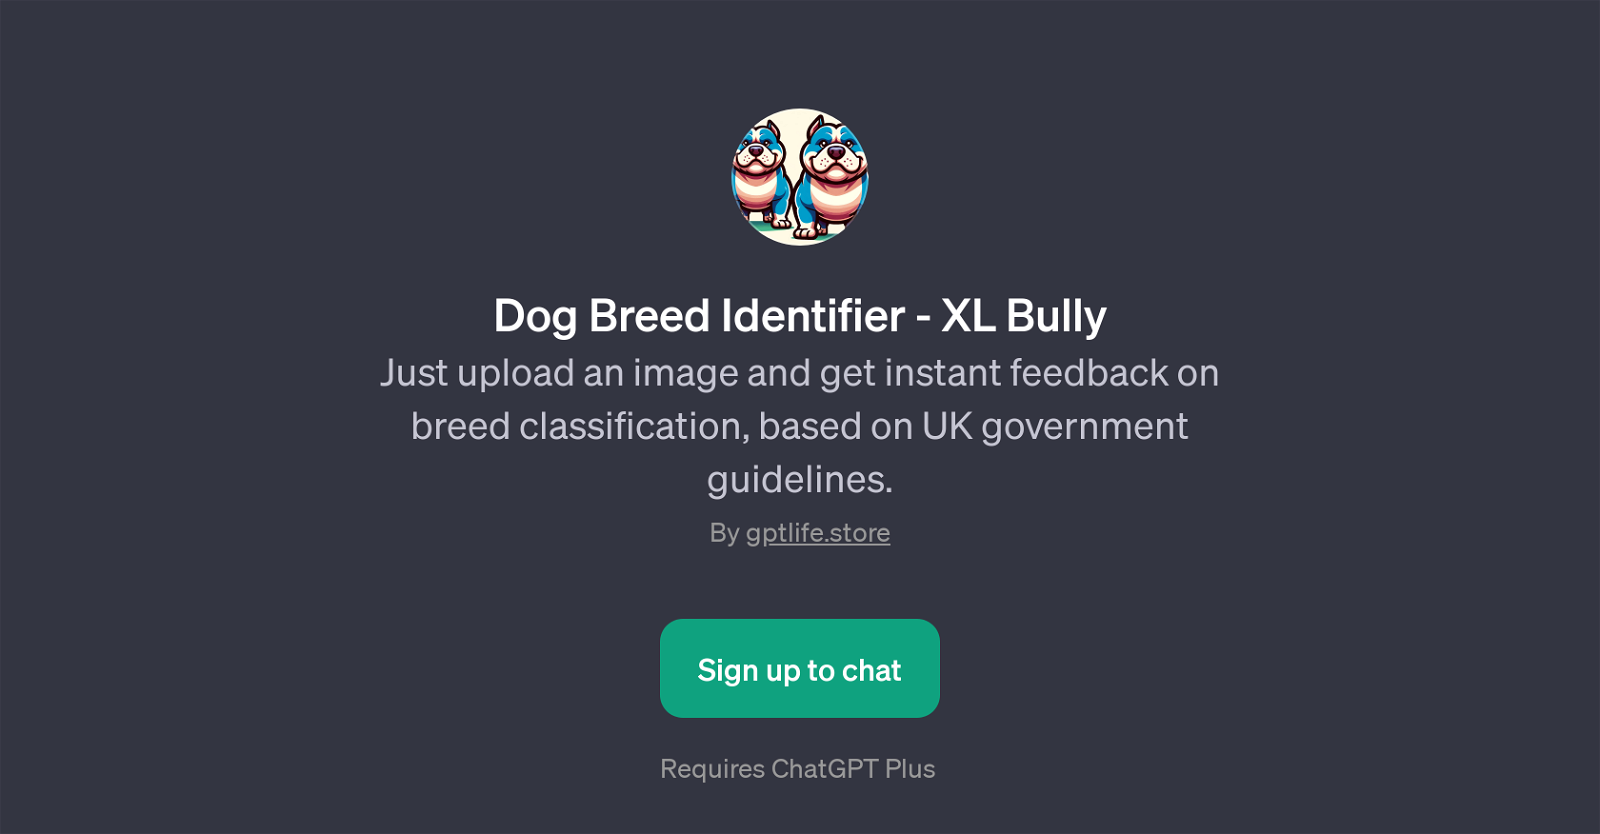 Dog Breed Identifier - XL Bully website